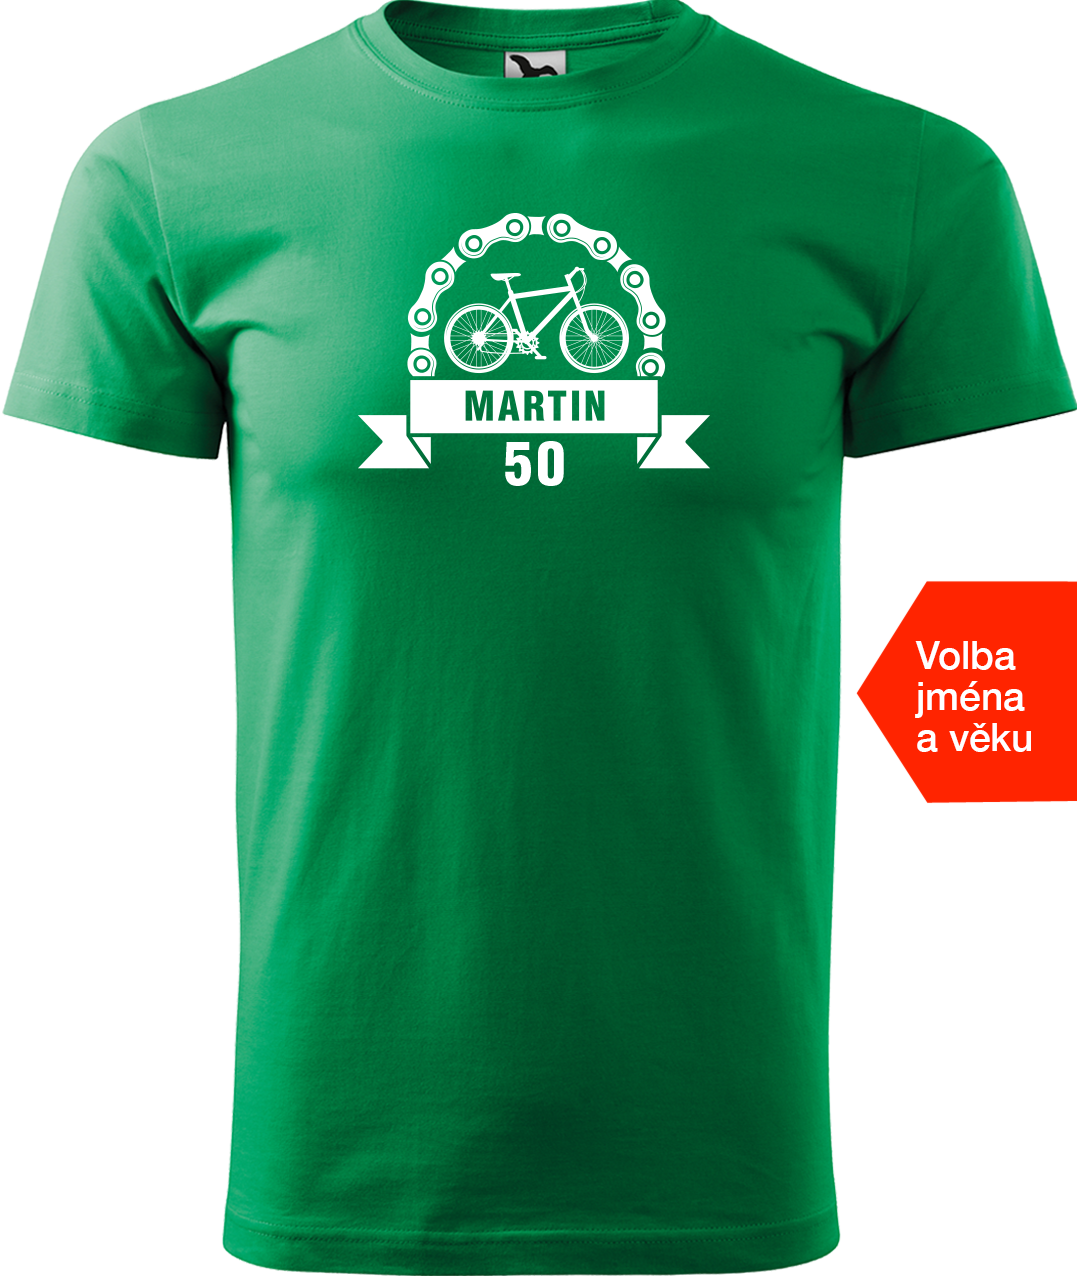 Pánské tričko pro cyklistu se jménem a věkem - Blahopřání Velikost: S, Barva: Středně zelená (16)